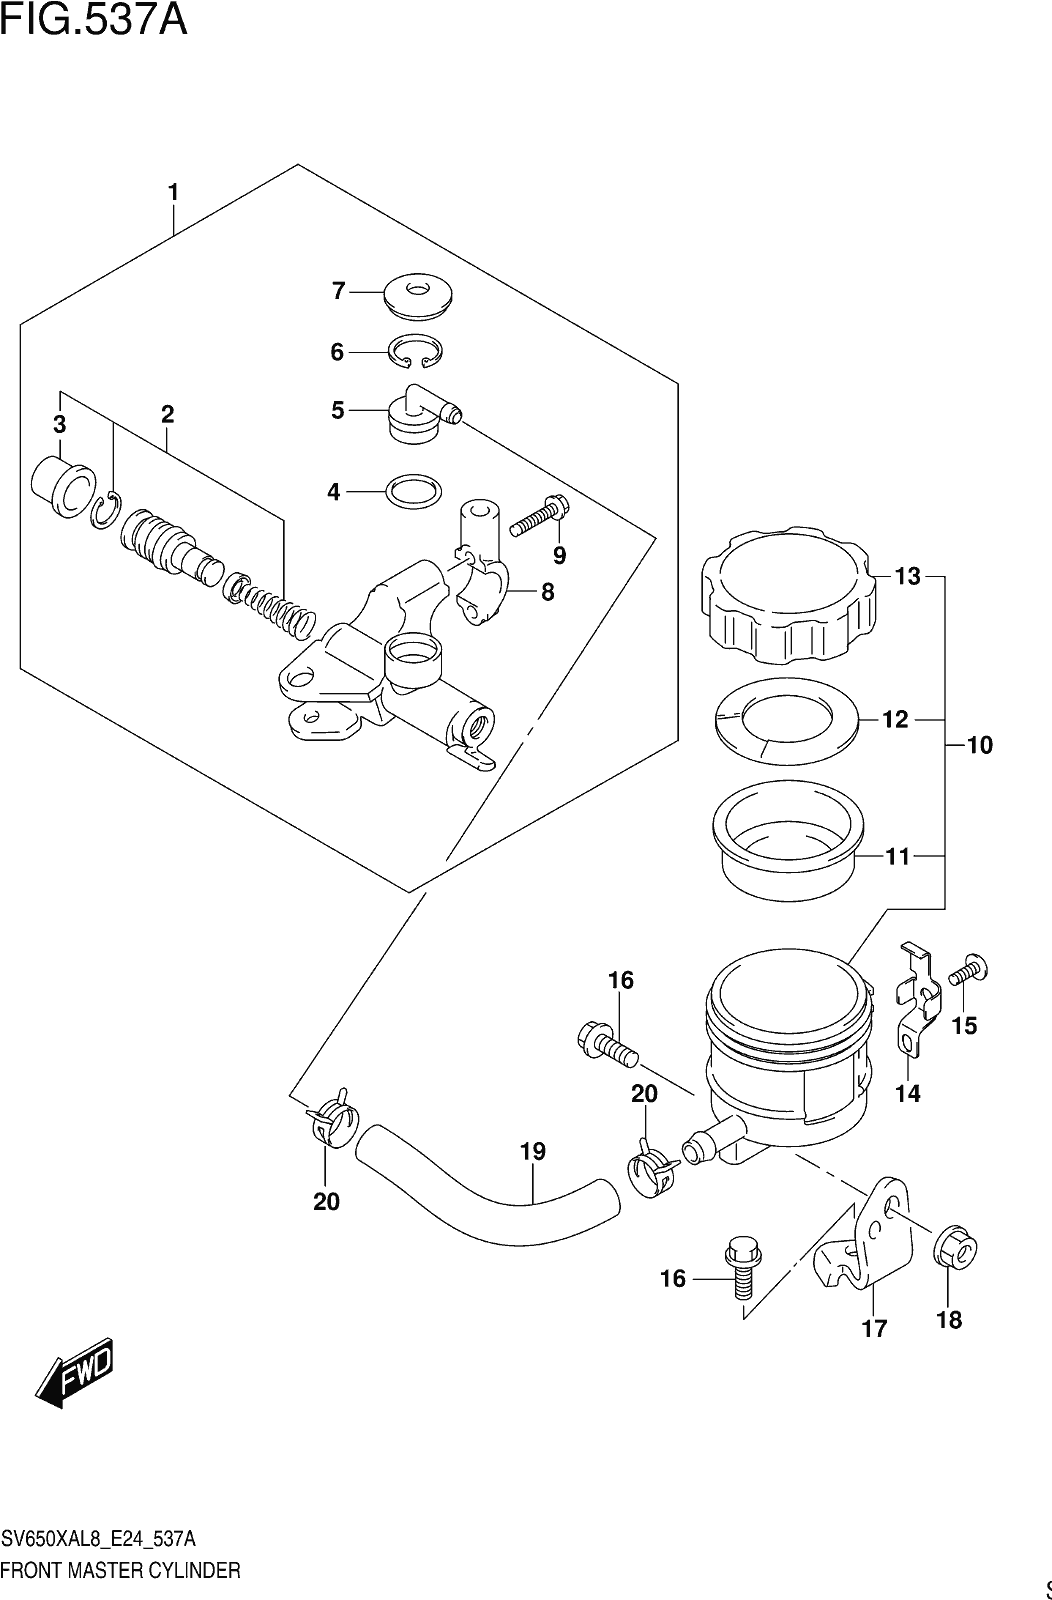 Fig.537a Front Master Cylinder